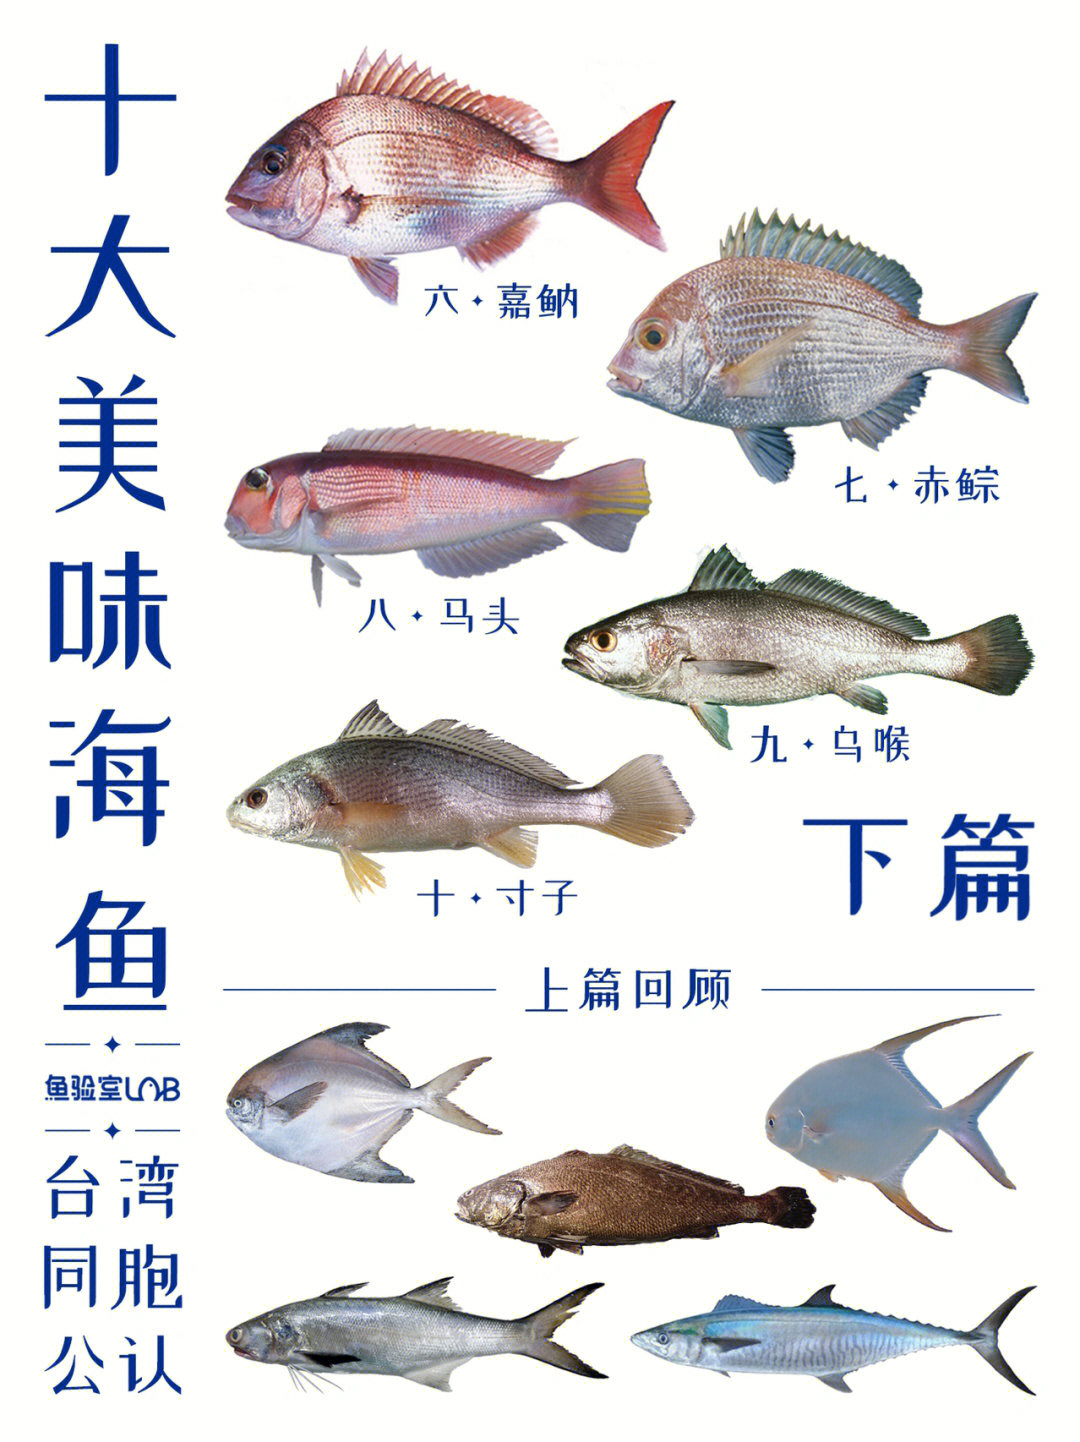 海鱼的种类 食用图片